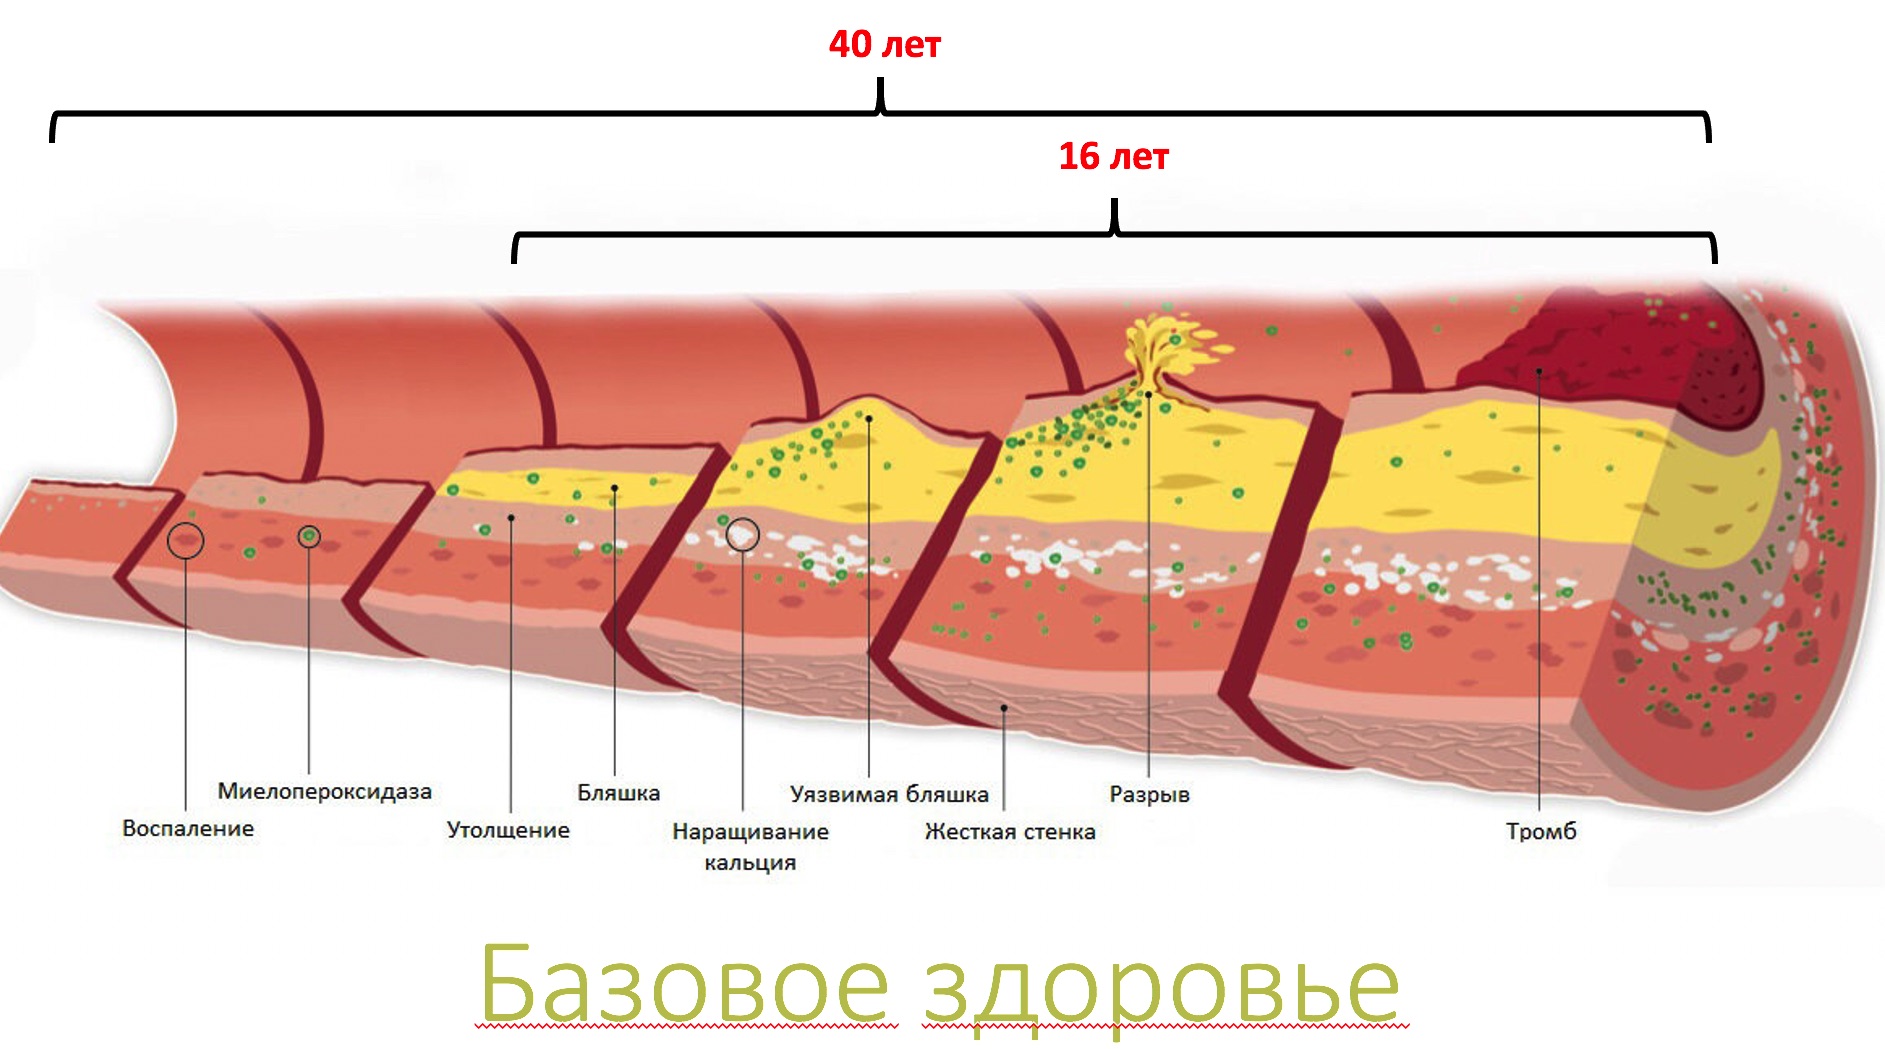 Распад сосудов. Ишемическая стадия атеросклероза. Атеросклероз коронарных артерий стадии и степени. Атеросклероз венечных артерий стадии и степень. Атеросклероз венечных артерий сердца.